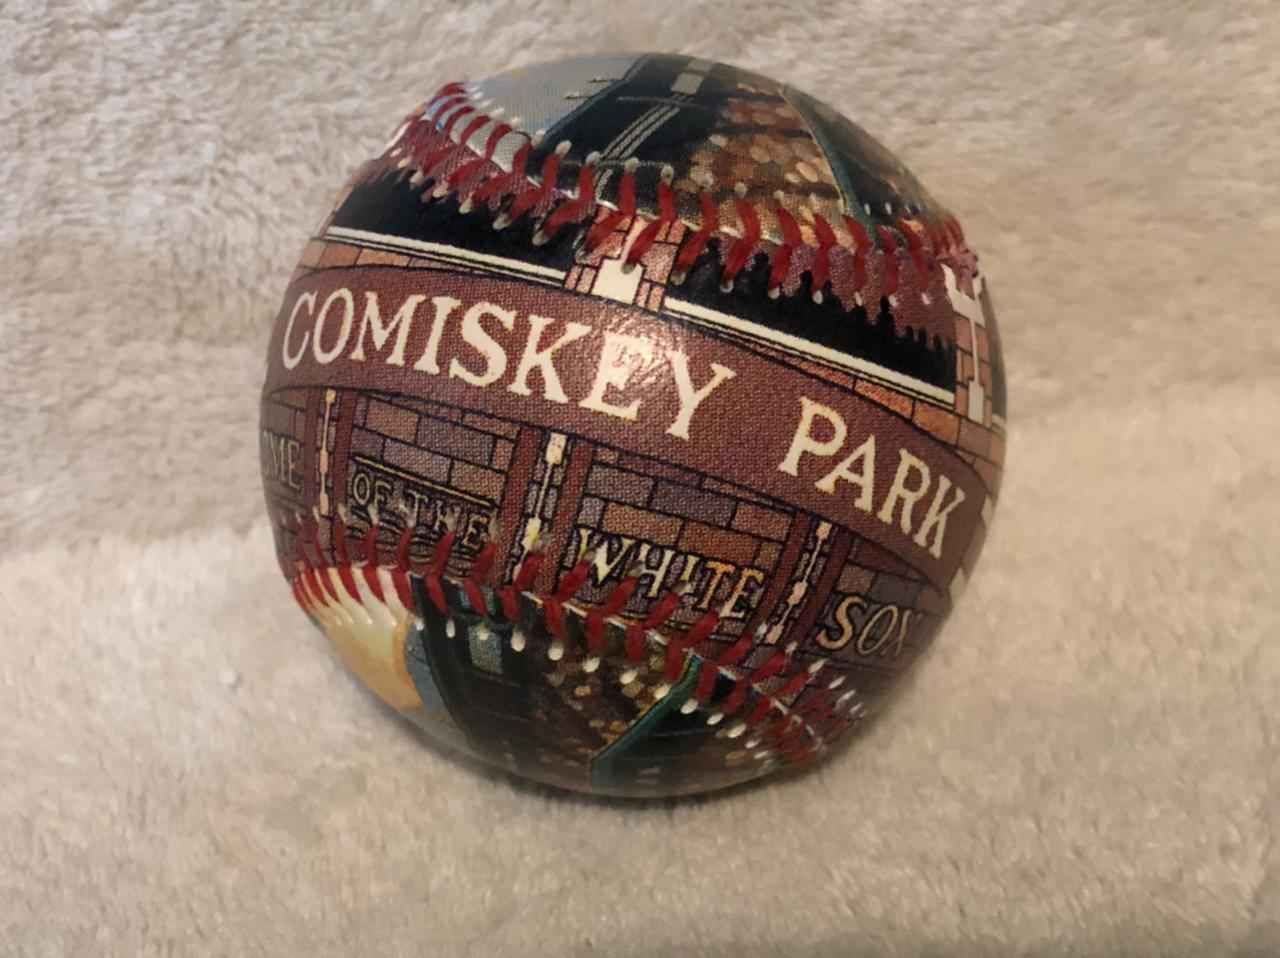 Vendo bonita palota de béisbol de colección del comiskey park, fabricante Unforgettaballs